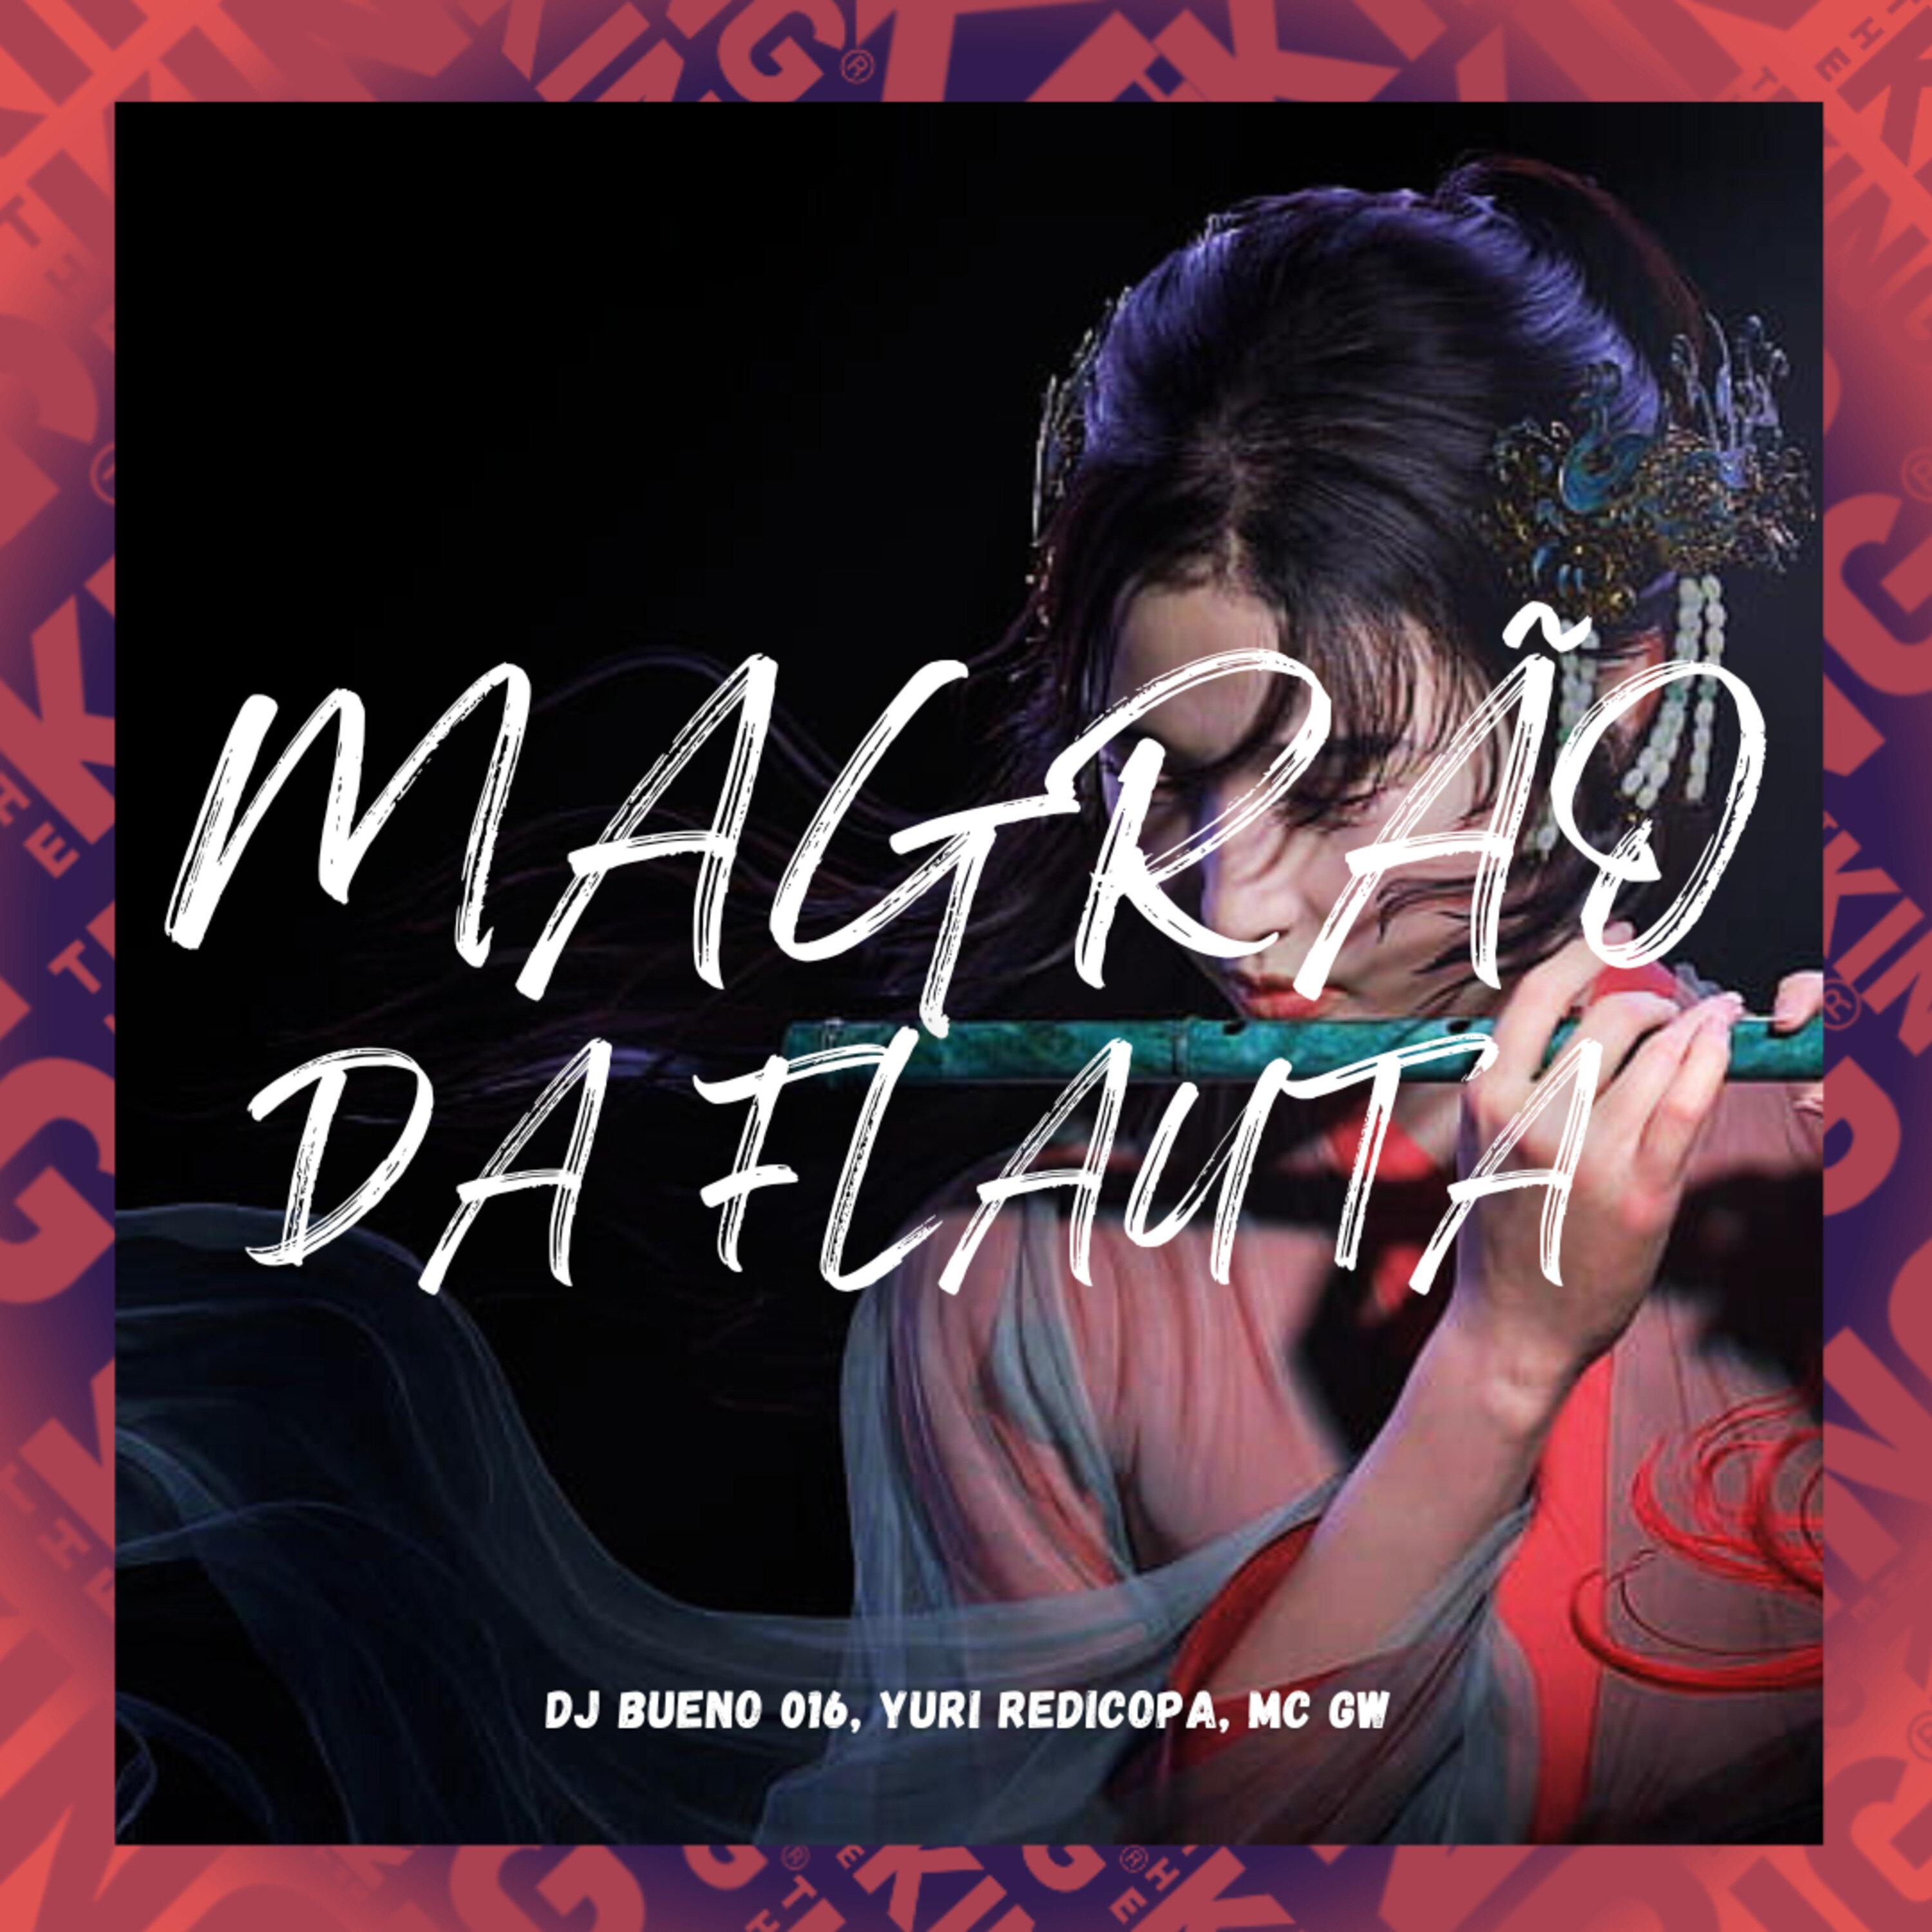 DJ Bueno 016 - Magrão da Flauta